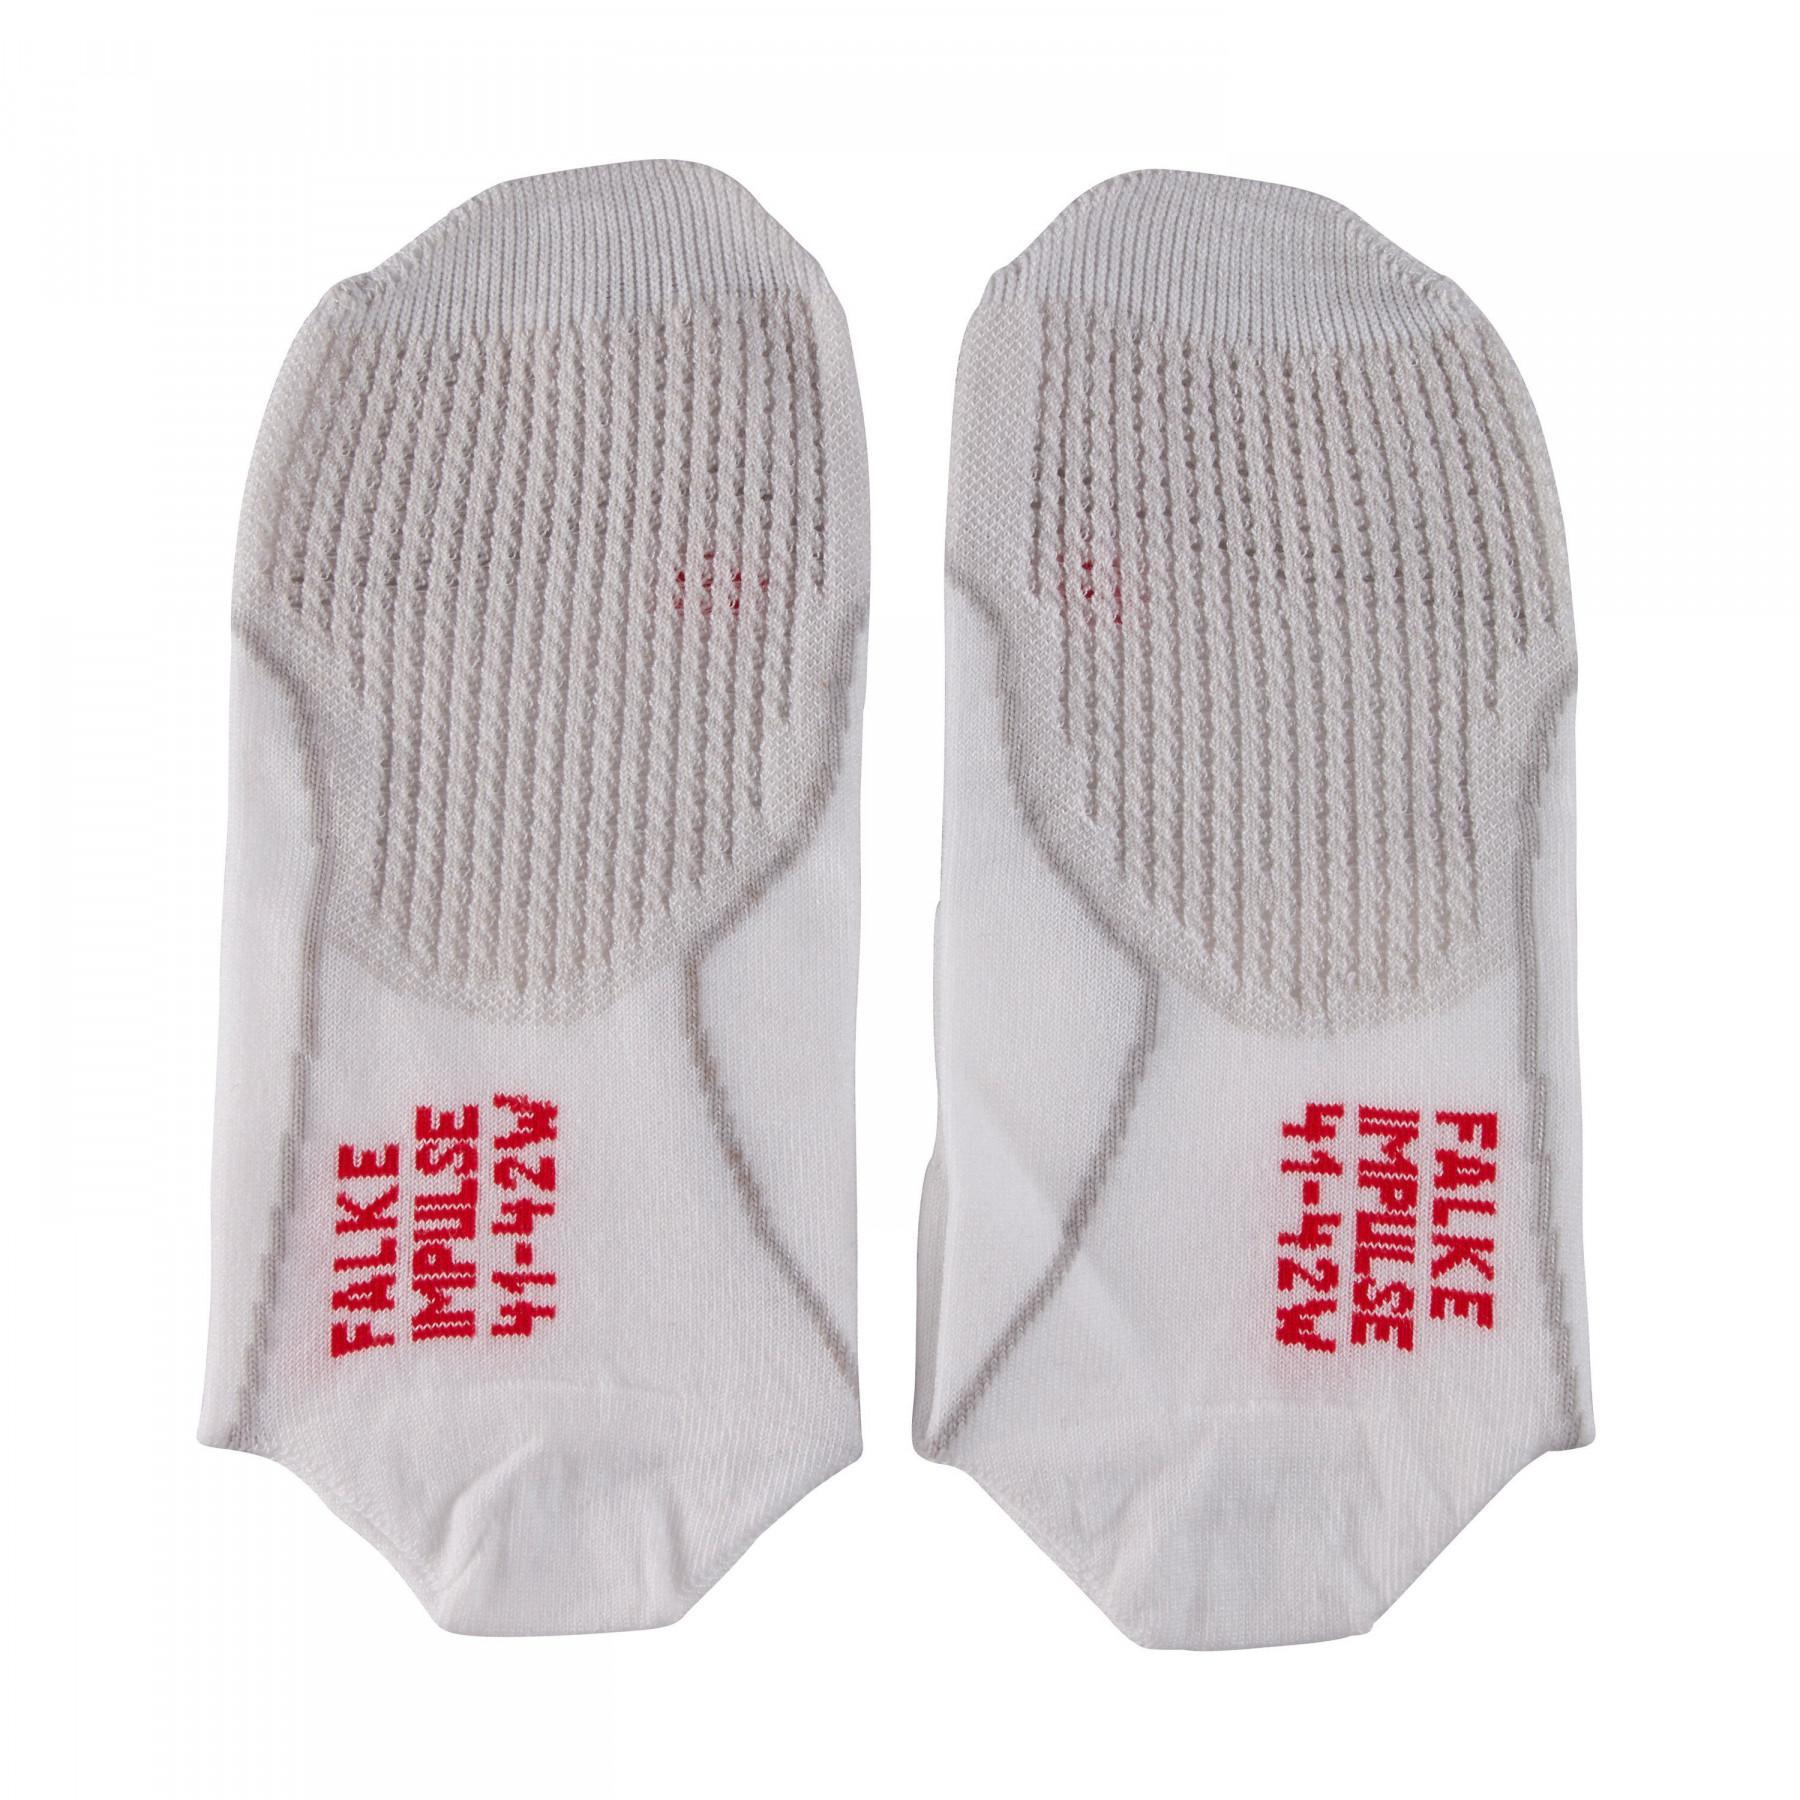 Women's socks Falke Impulse Air